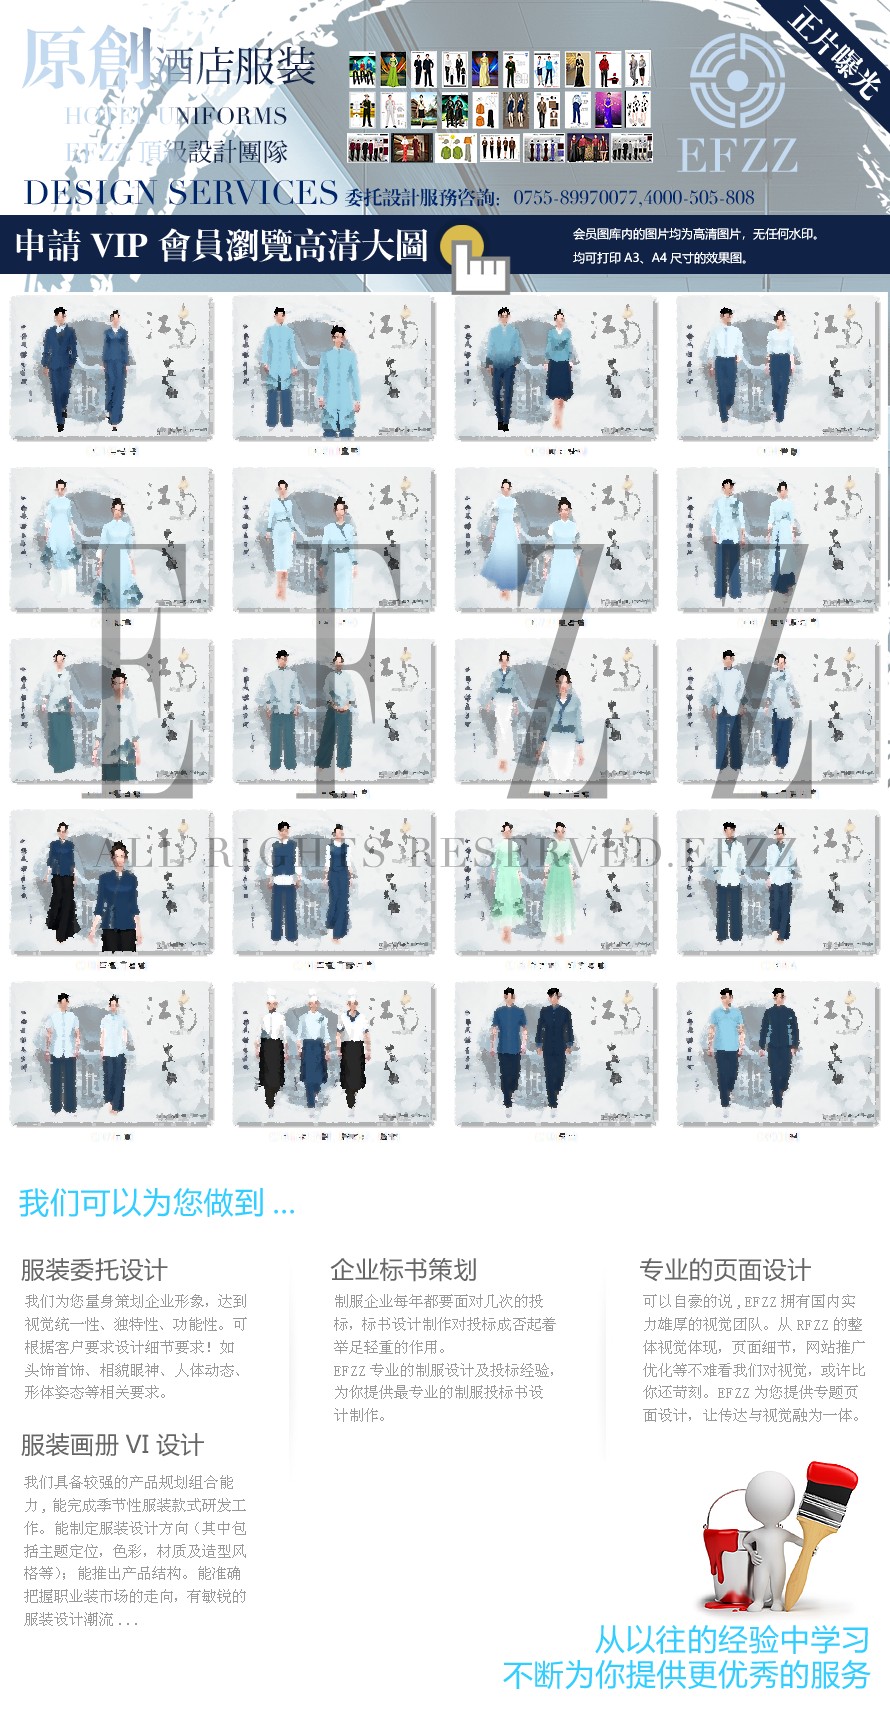 江南风酒店新中式员工制服设计定制案例